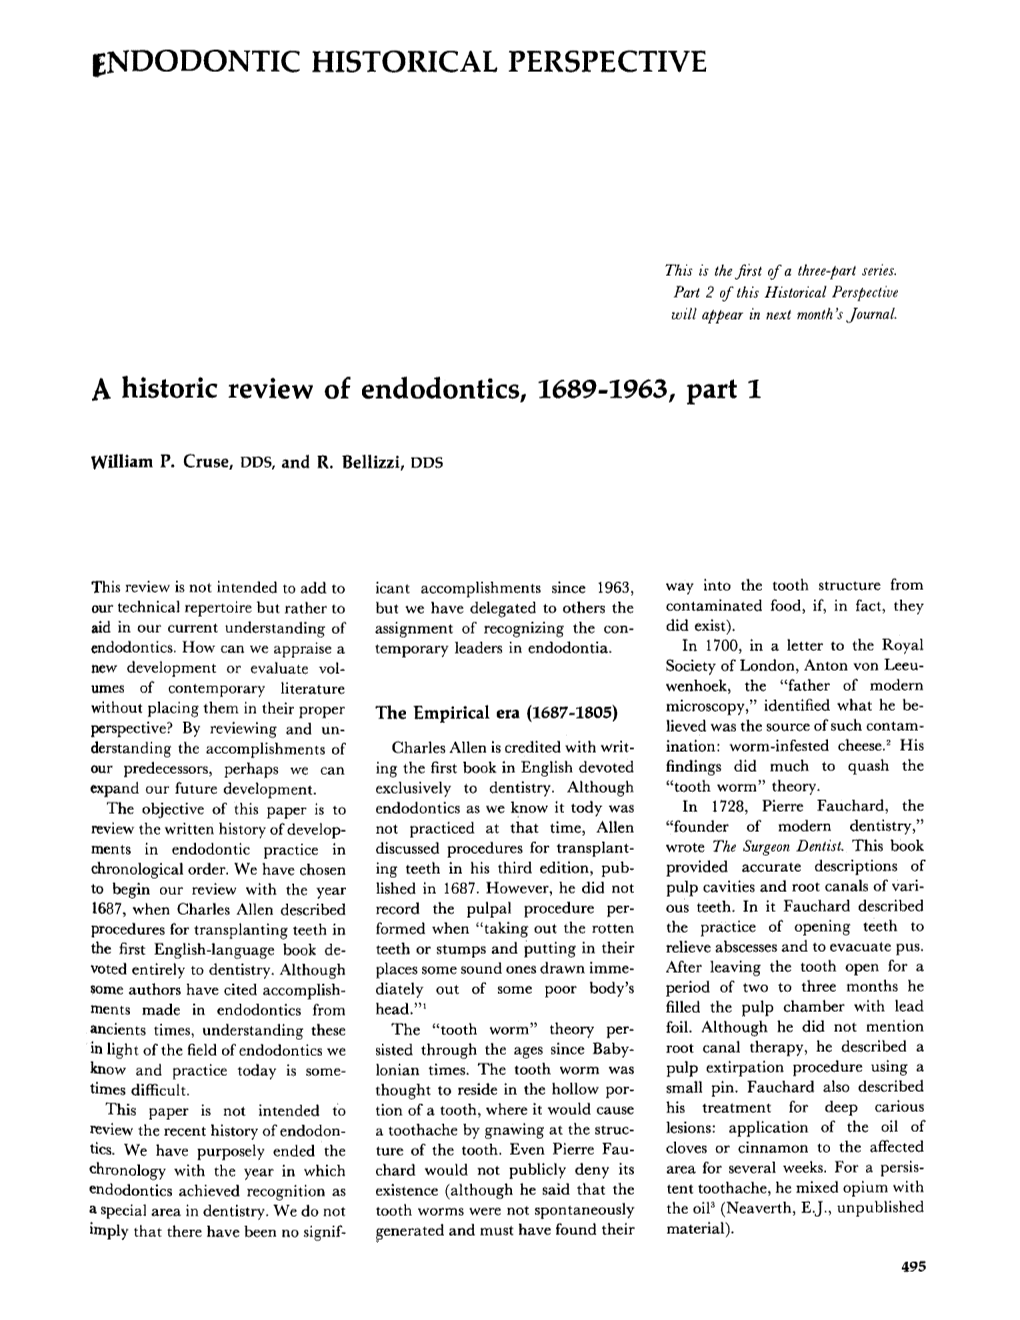 A Historic Review of Endodontics, 1689-1963, Part 1